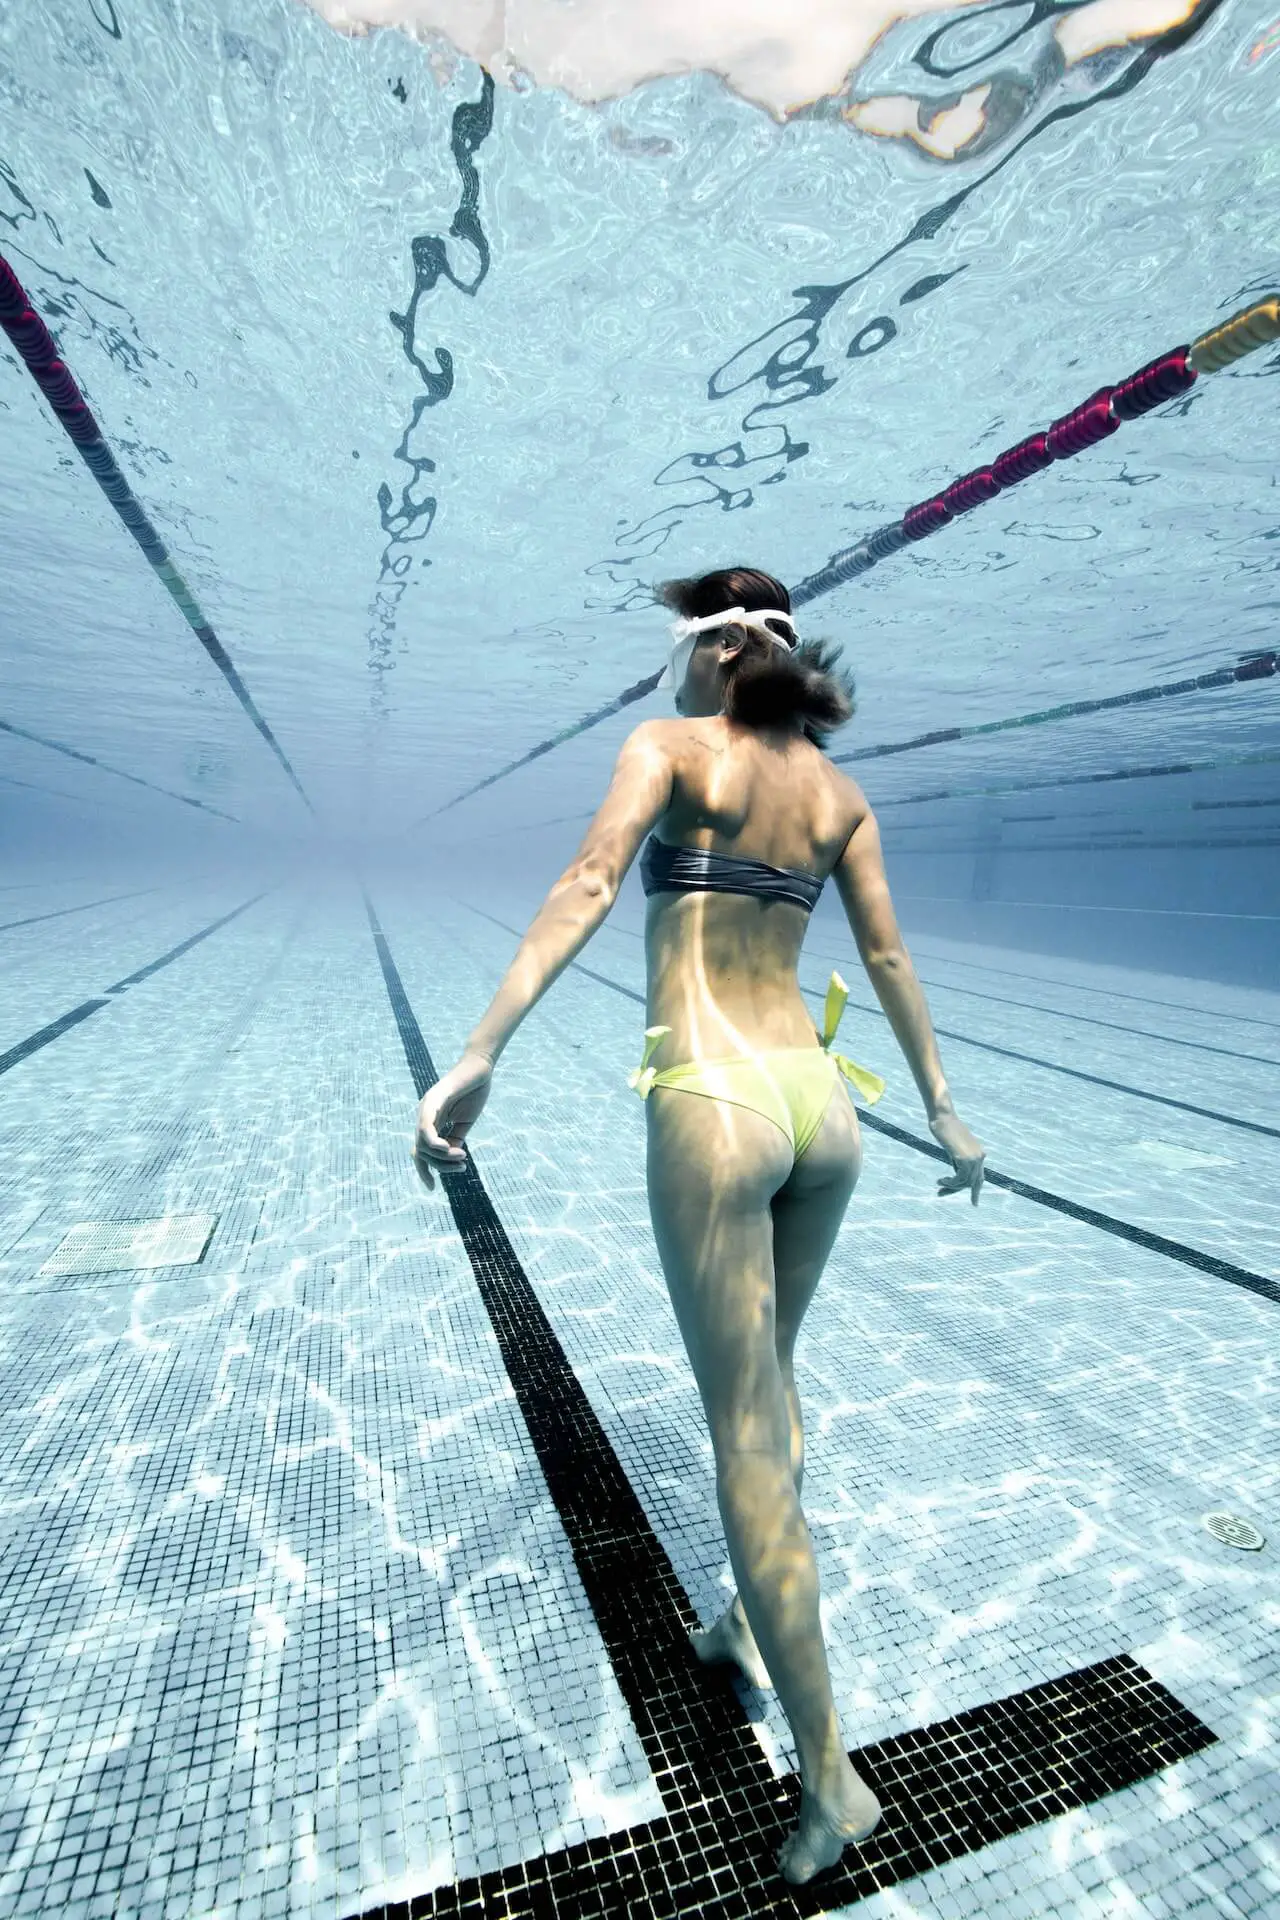 Can You Swim with Negative Buoyancy